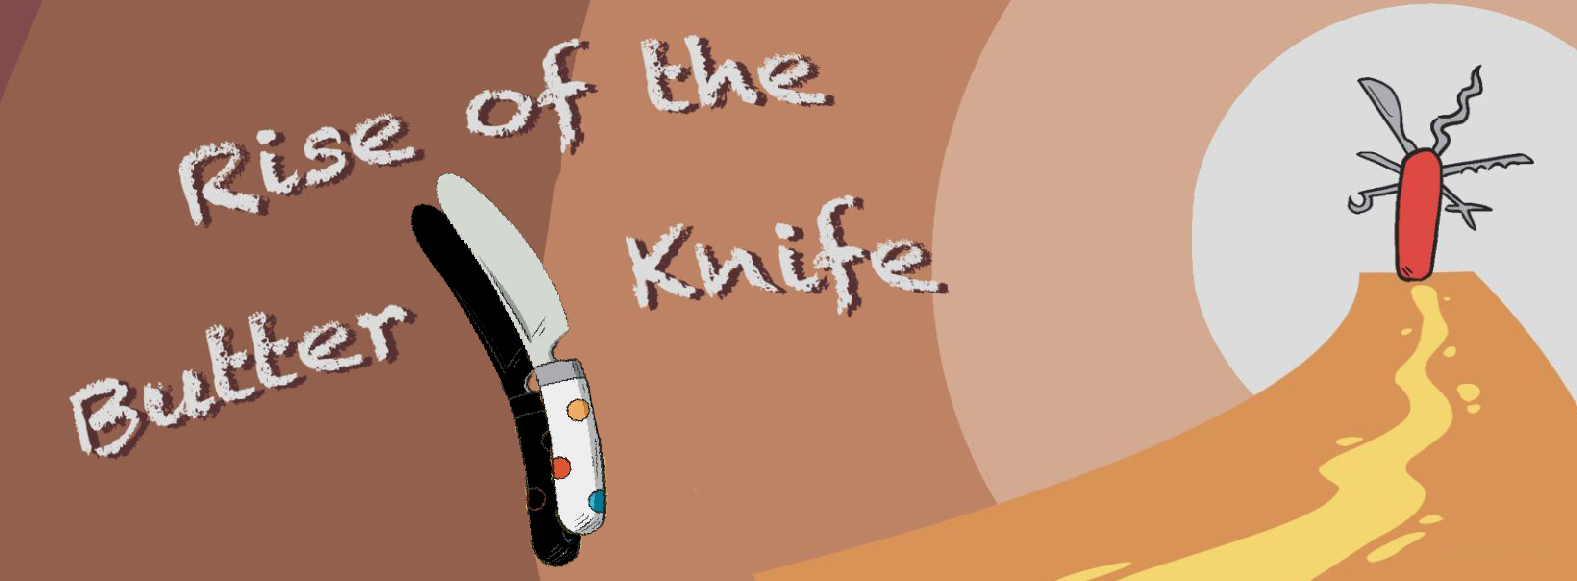 Rise of the Butterknife